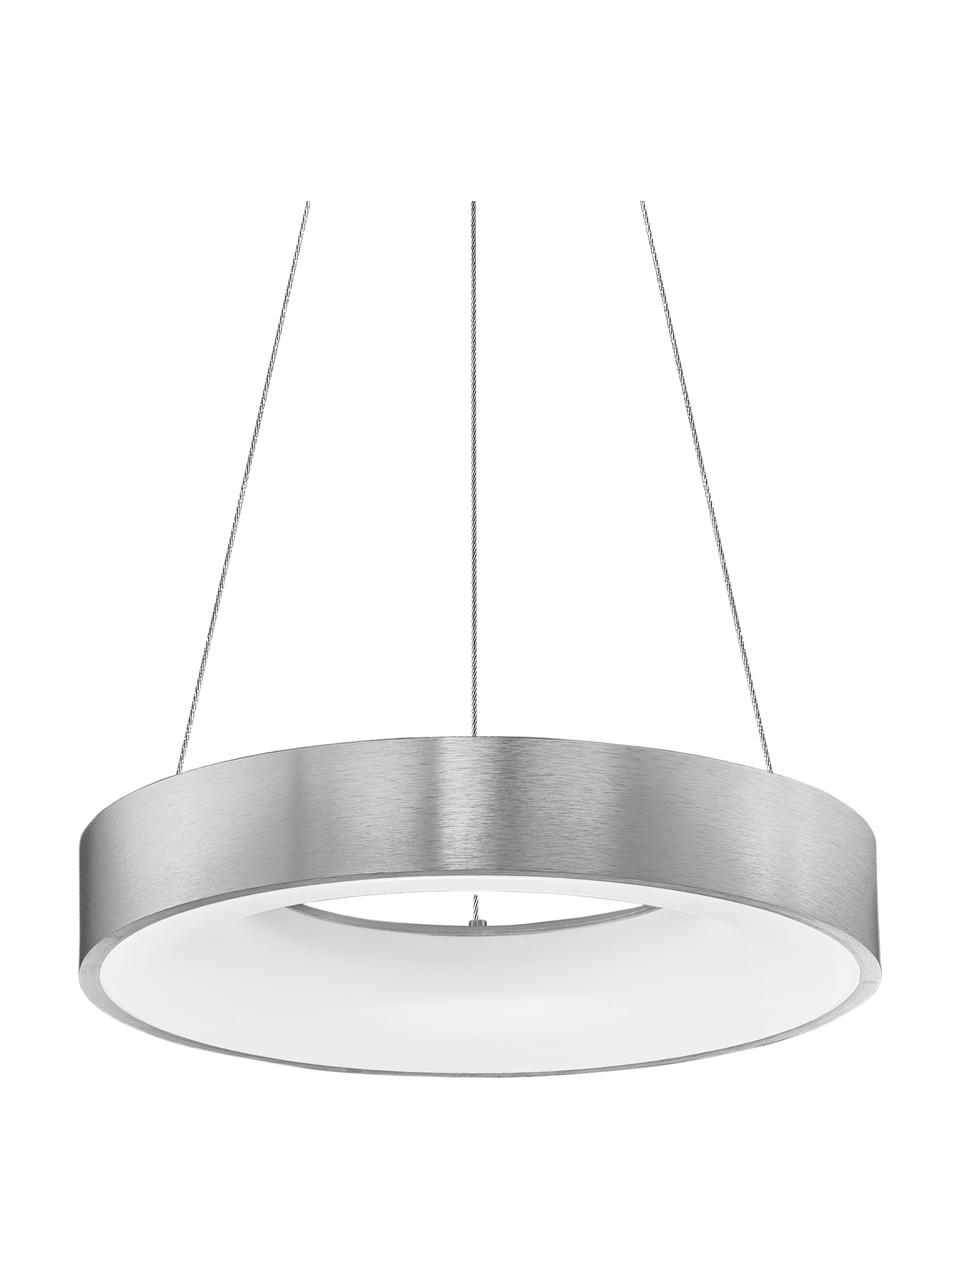 Dimmbare LED-Pendelleuchte Rando in Silber, Lampenschirm: Aluminium, beschichtet, Baldachin: Aluminium, beschichtet, Silberfarben, Ø 60 x H 6 cm